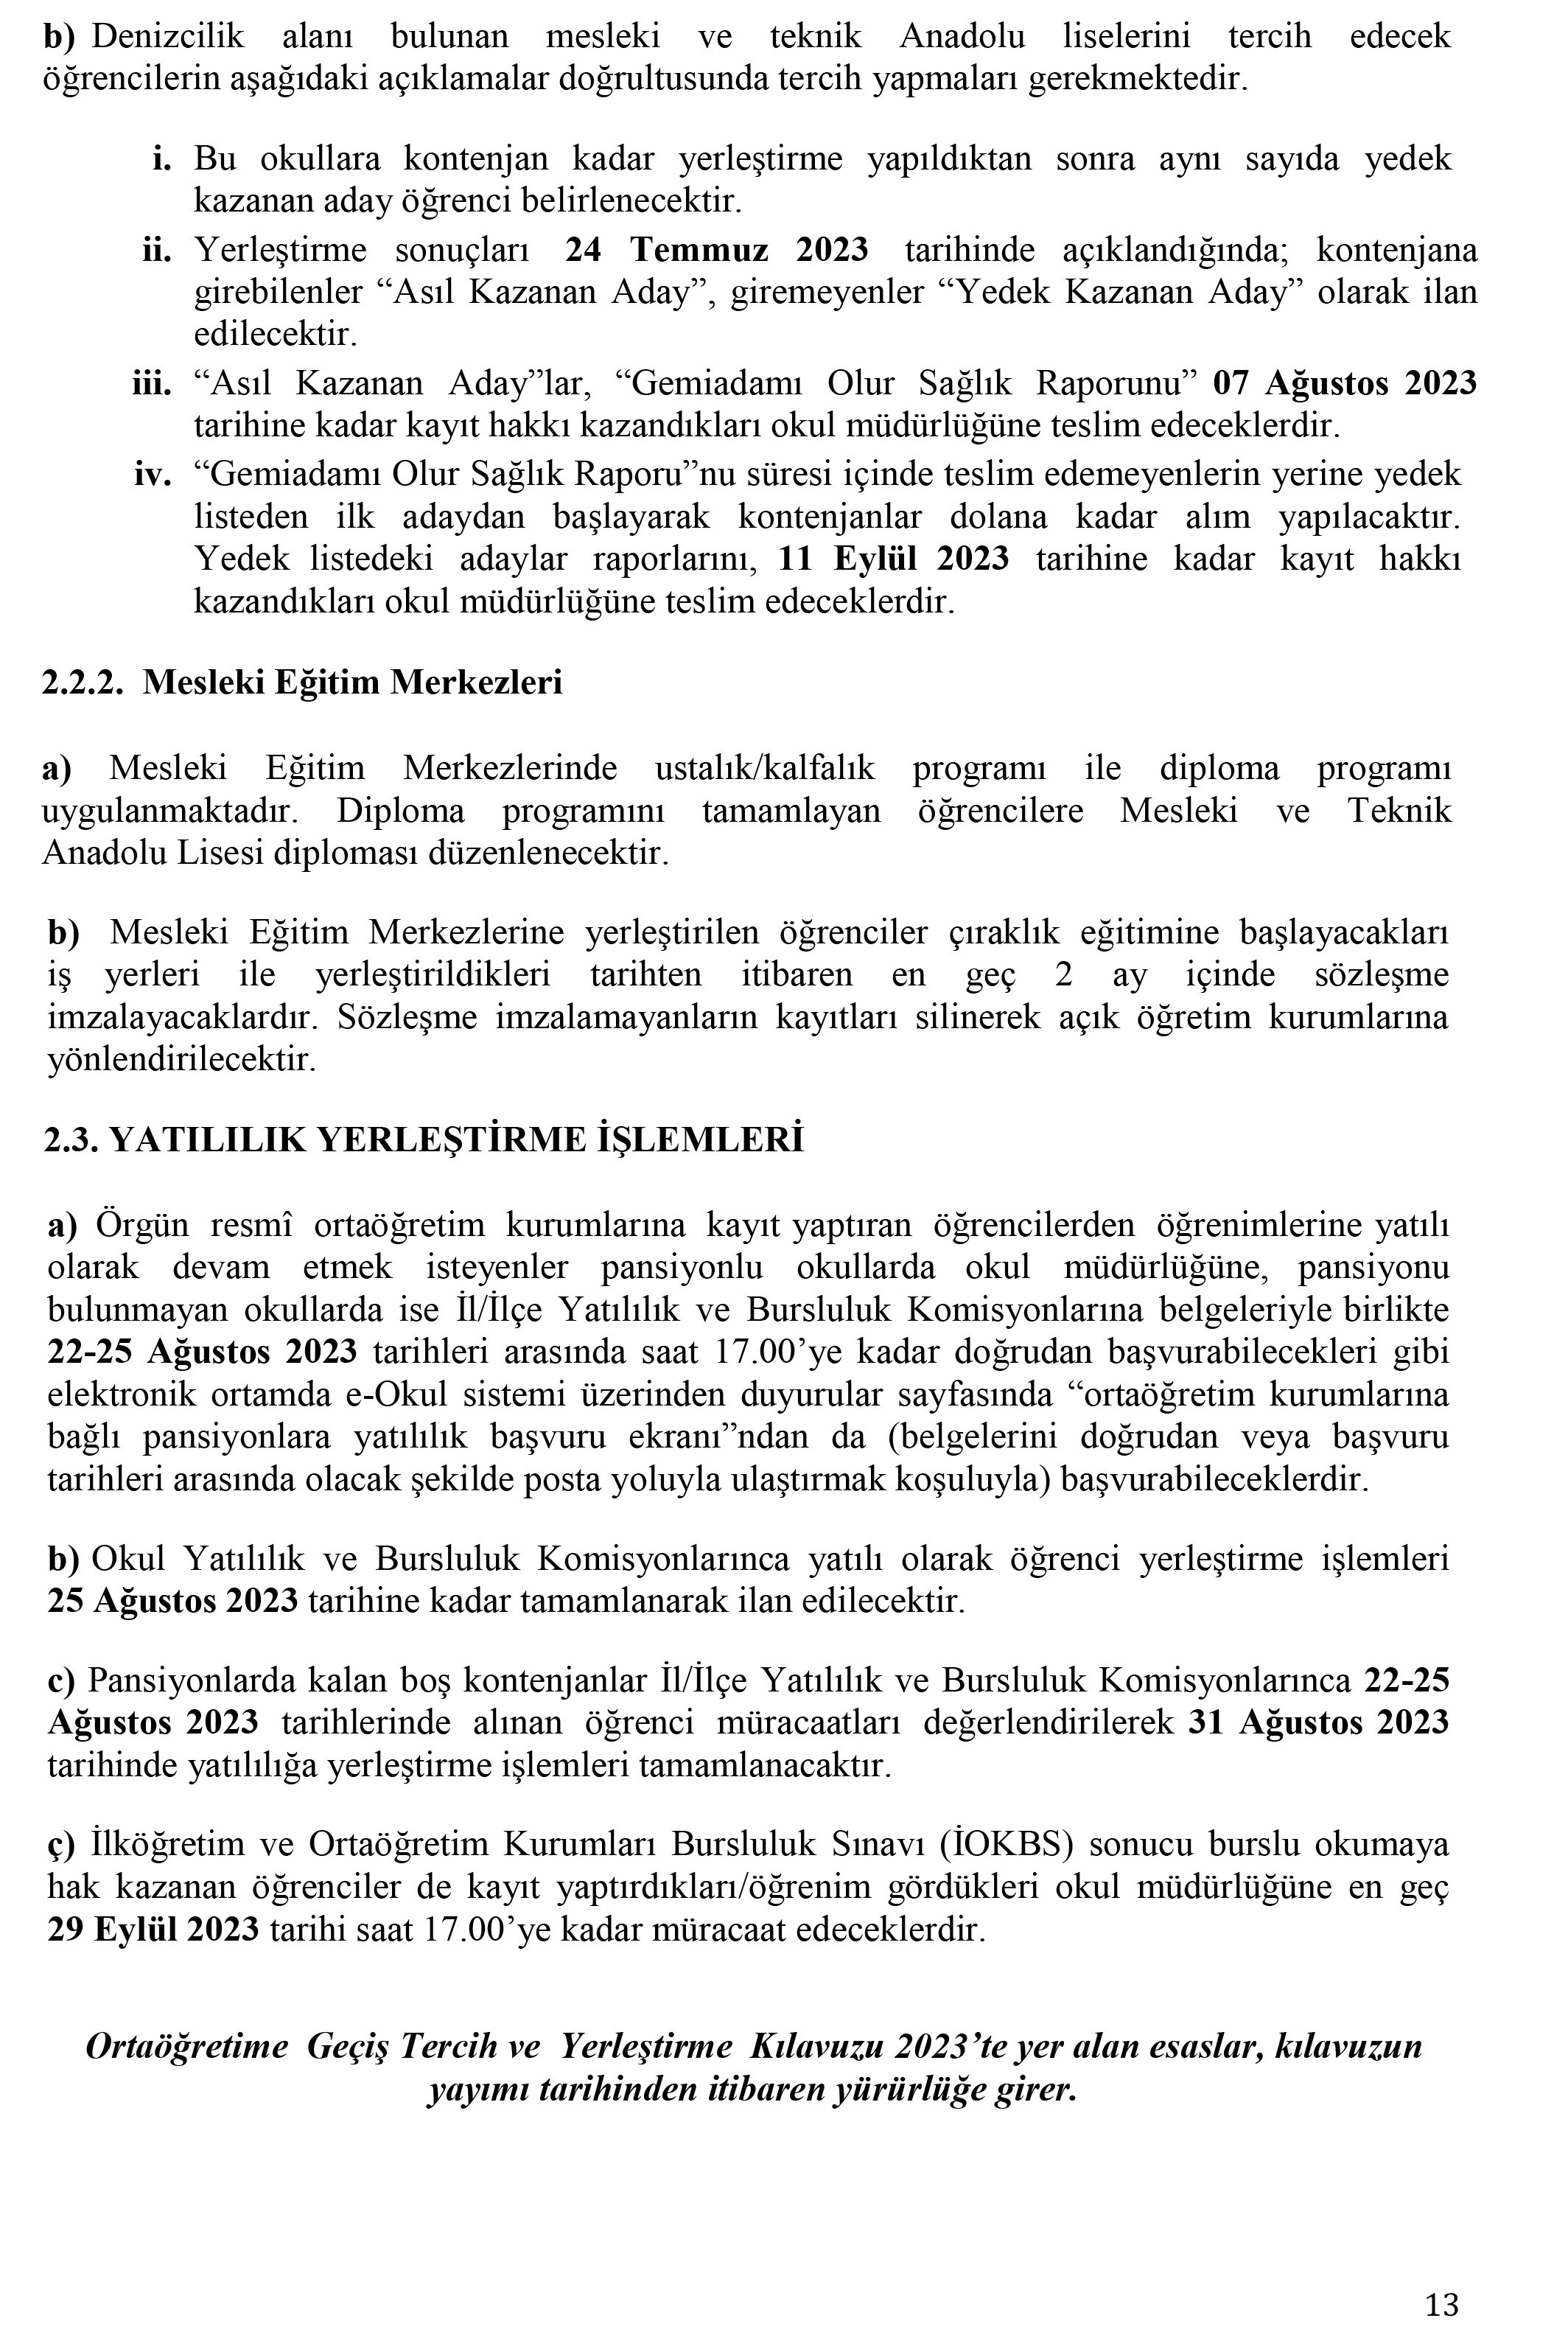 2023_yili_ortaogretime_gecis_tercih_ve_yerlestirme_kilavuzu_2-14